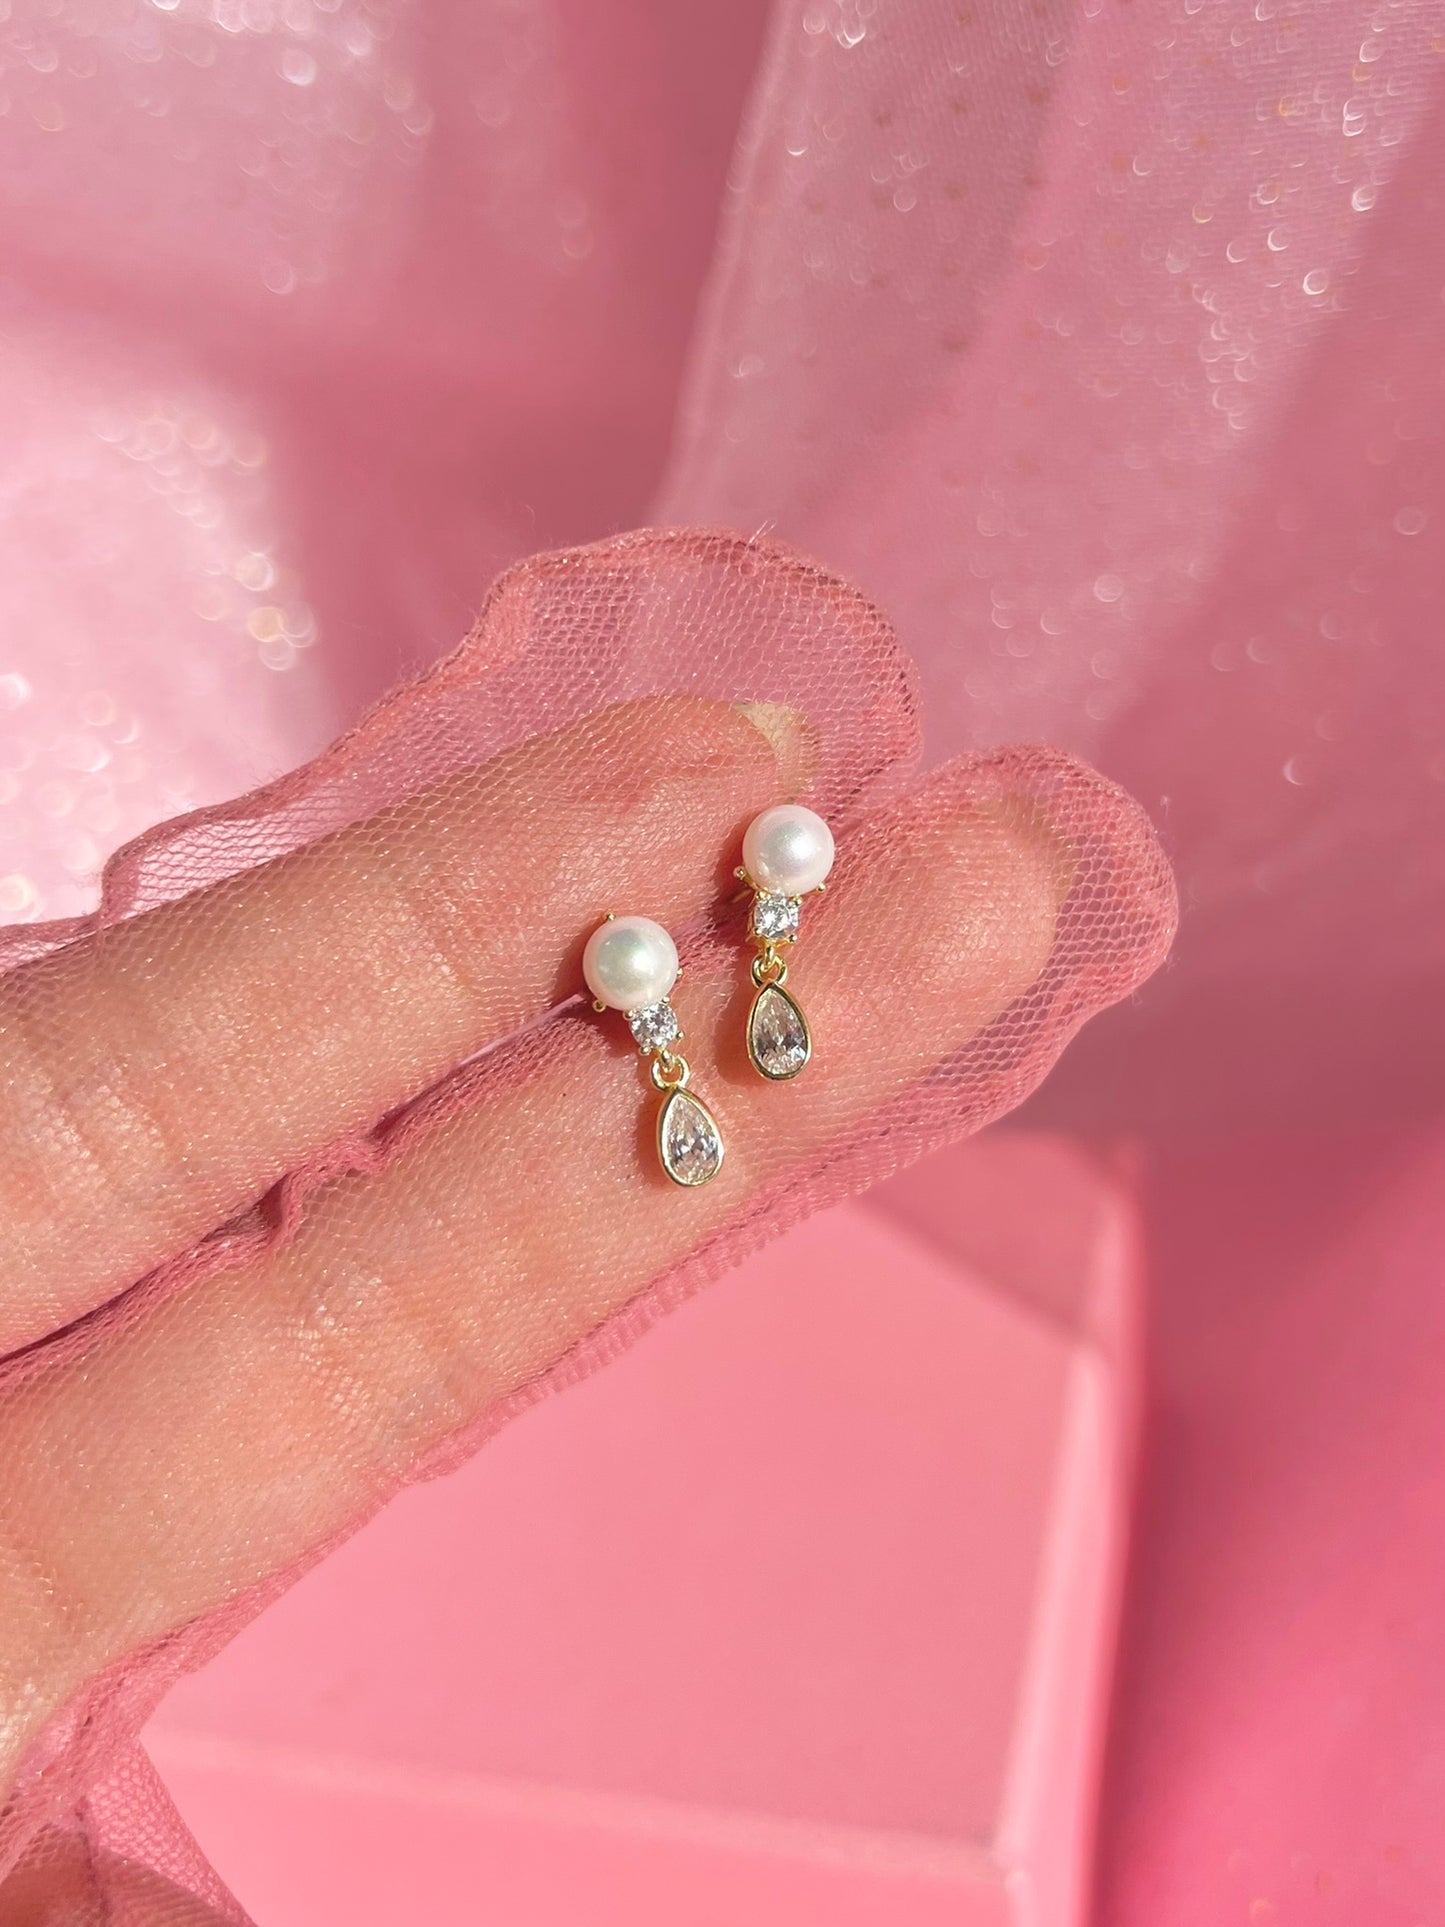 Water Drop Earrings with PearL -Minimalist Earring -925 Sterling Silver EaRring -Simple Stone Pearl Earring